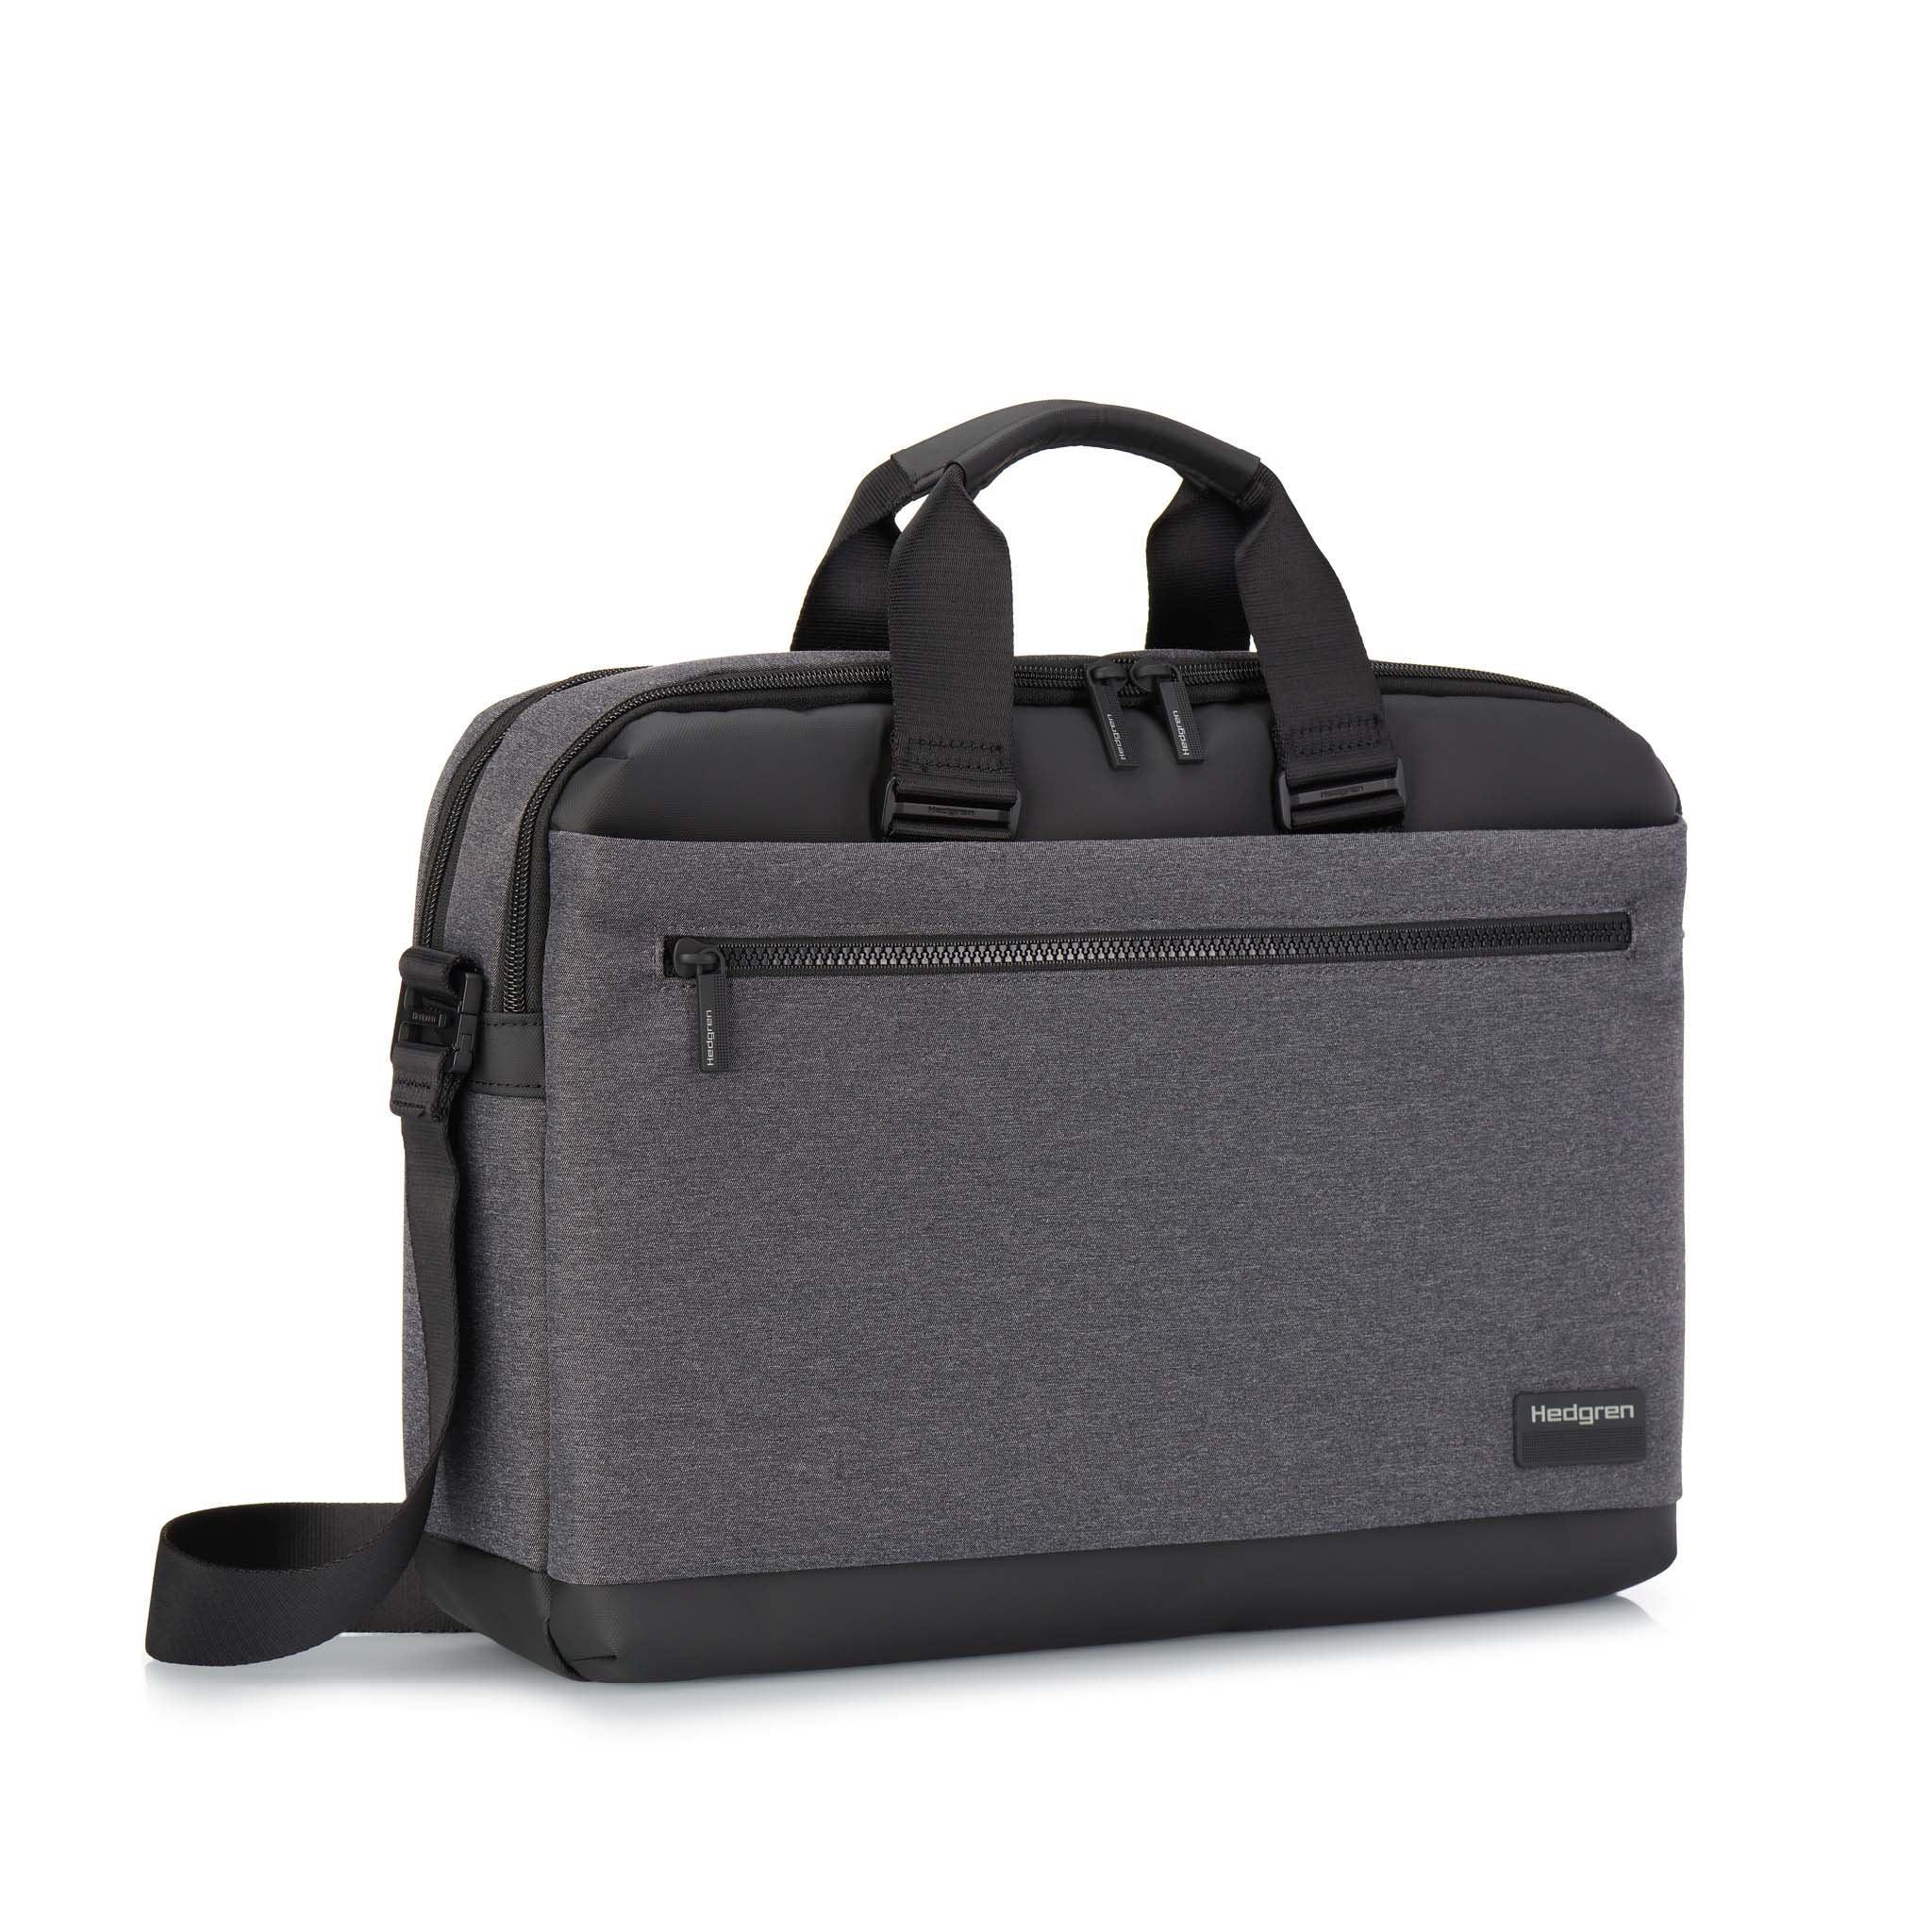 Hedgren Byte 15.6" Laptop Bag - Flyclothing LLC